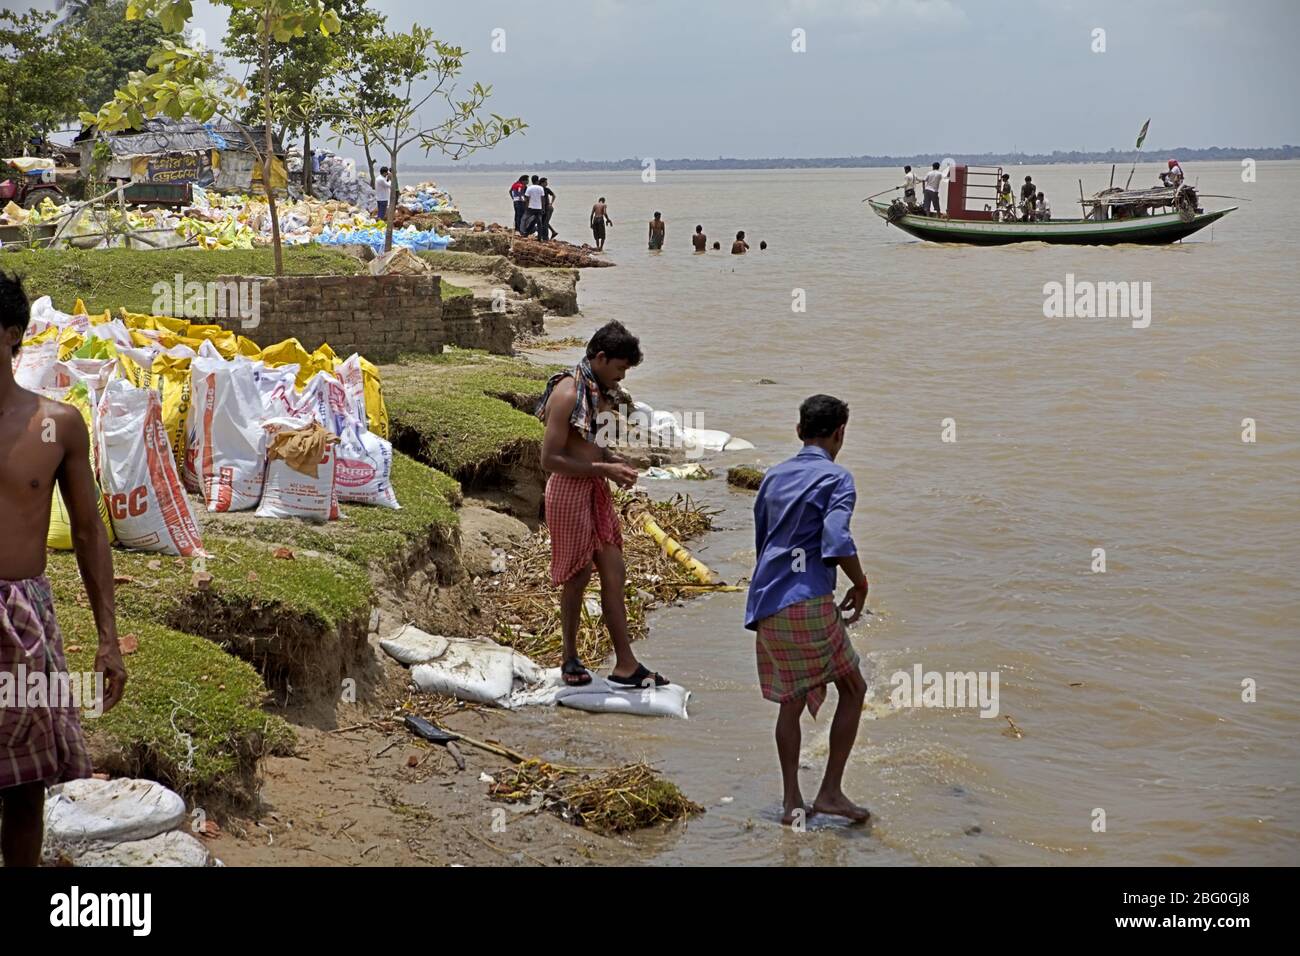 Lavoratori che si ripuliscono sulla riva del fiume Rupnarayan prima del pranzo durante un progetto di controllo di erosione del fiume, come una barca che attraversa il fiume che trasporta i passeggeri sta arrivando in background a Tamluk, Purba Medinipur, Bengala Occidentale, India. Foto Stock